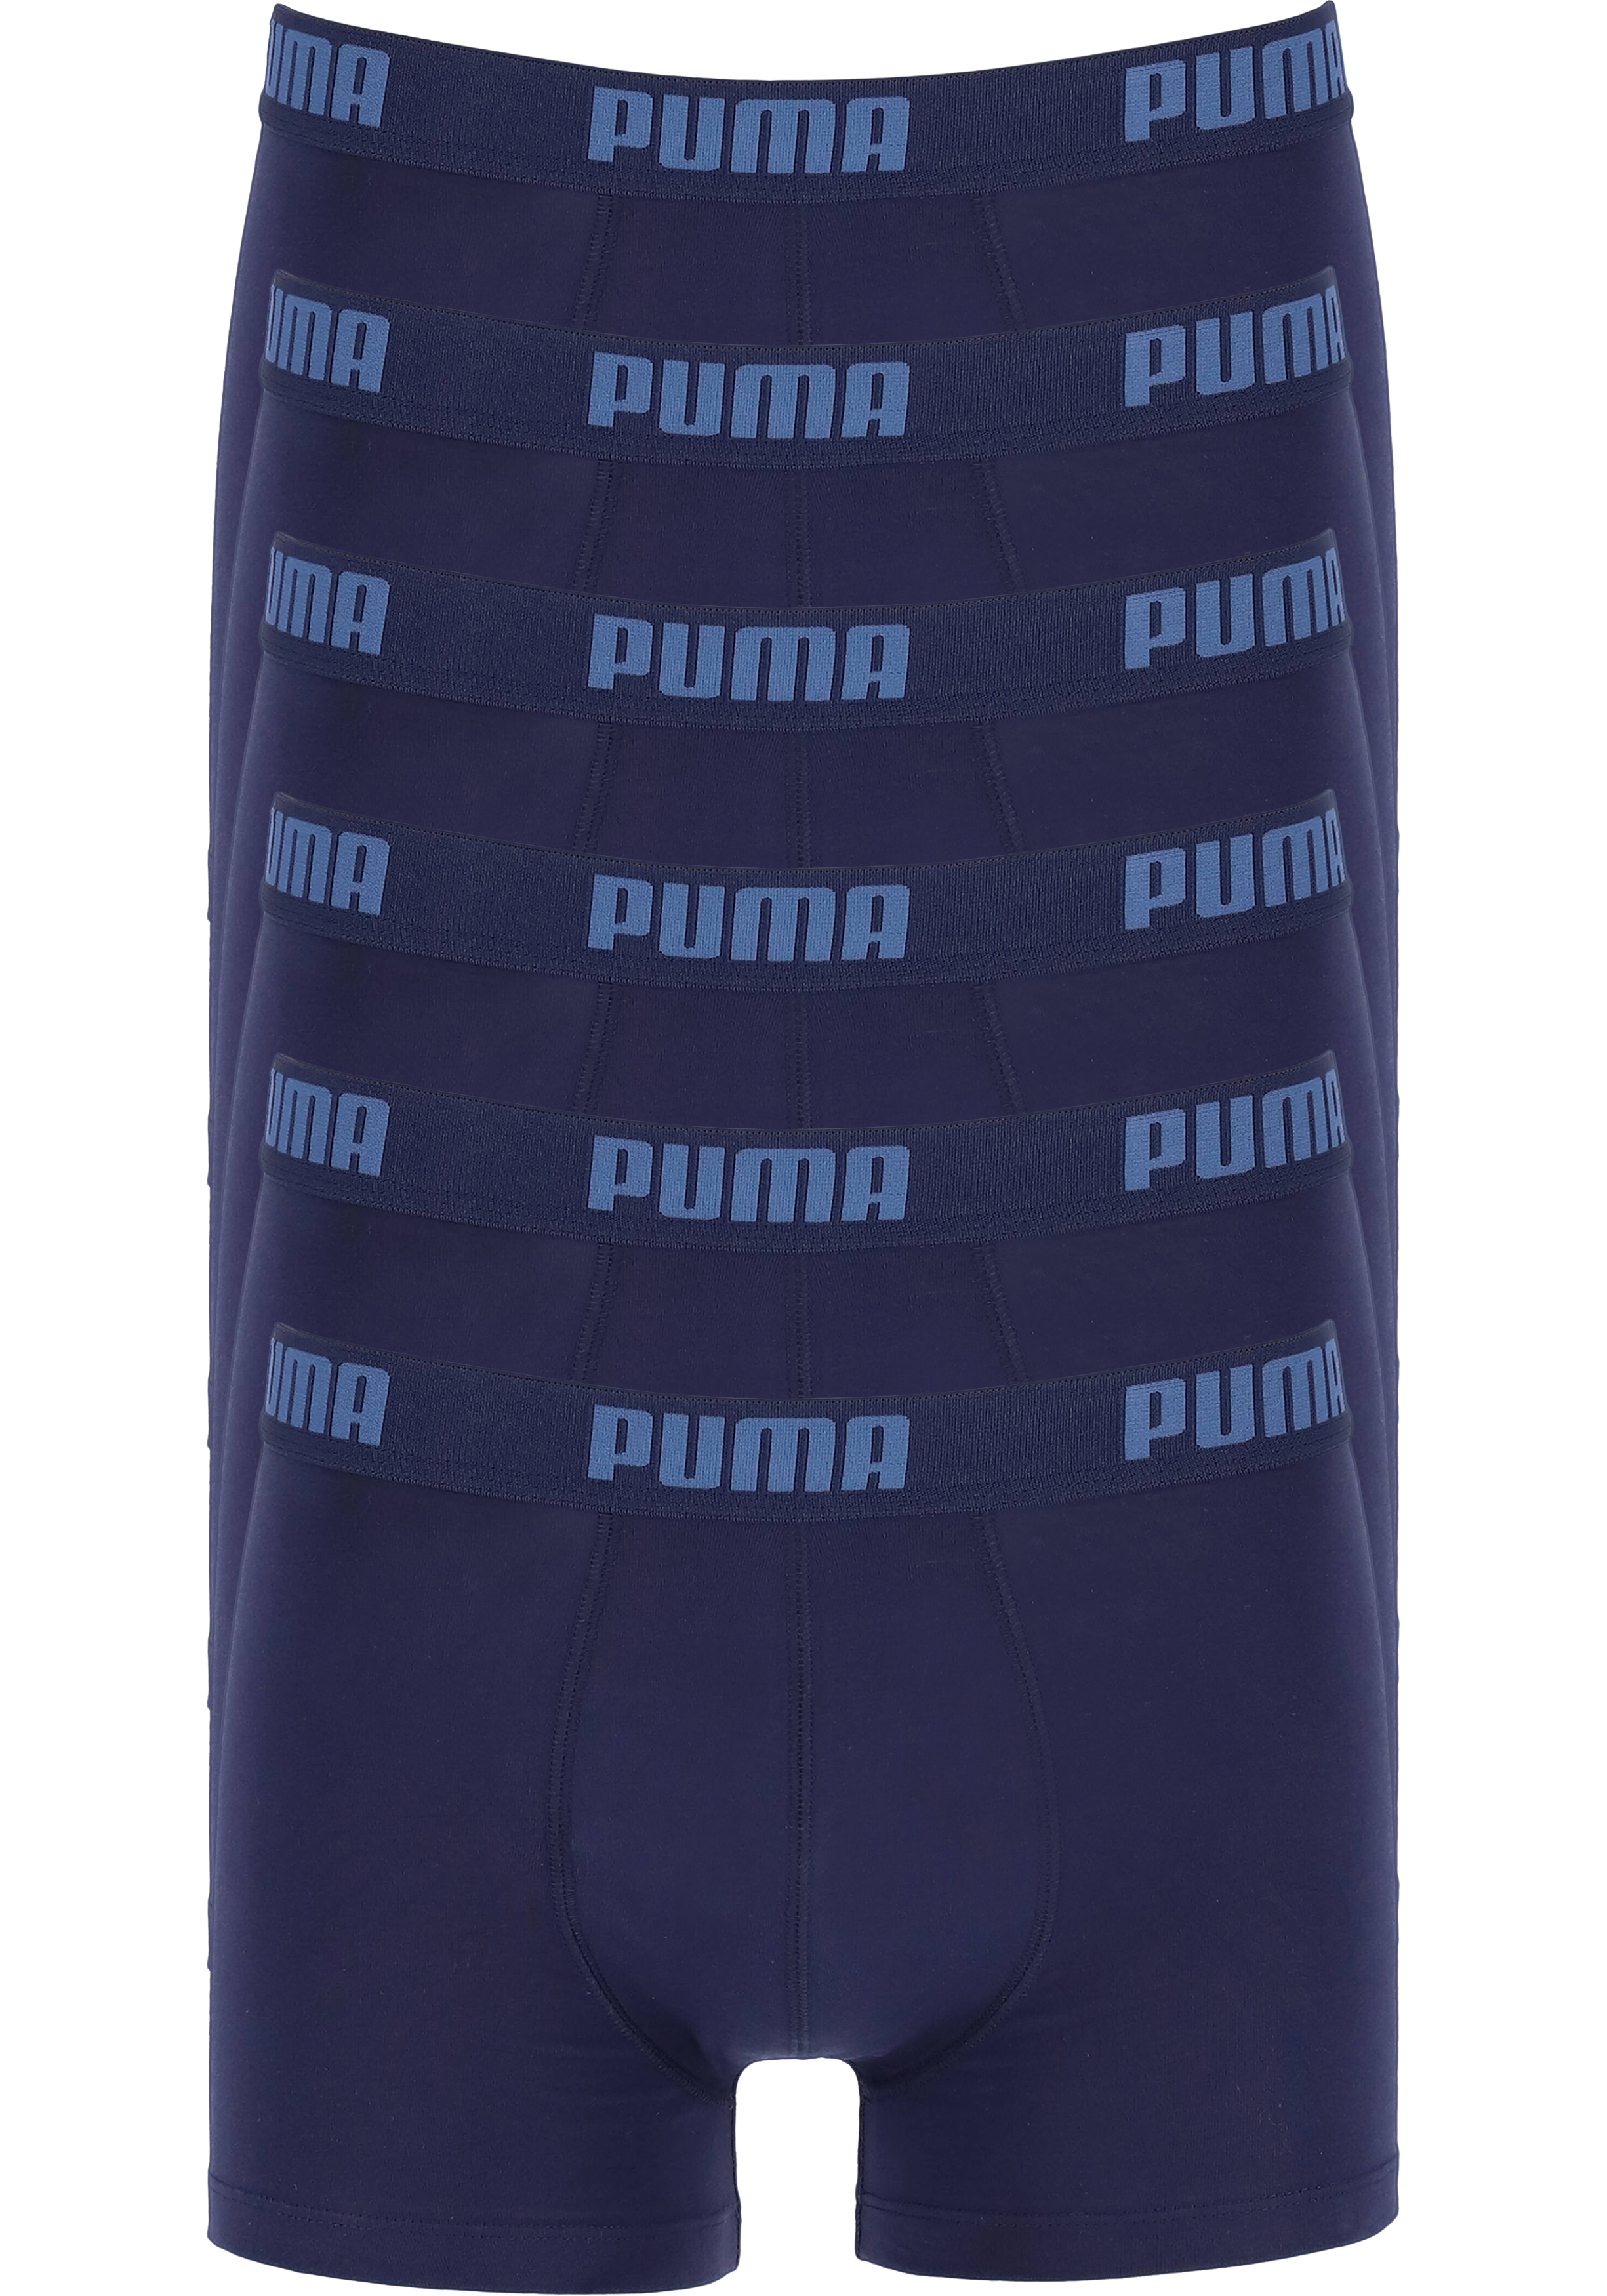 Puma Basic Boxer heren (6-pack), navy blauw